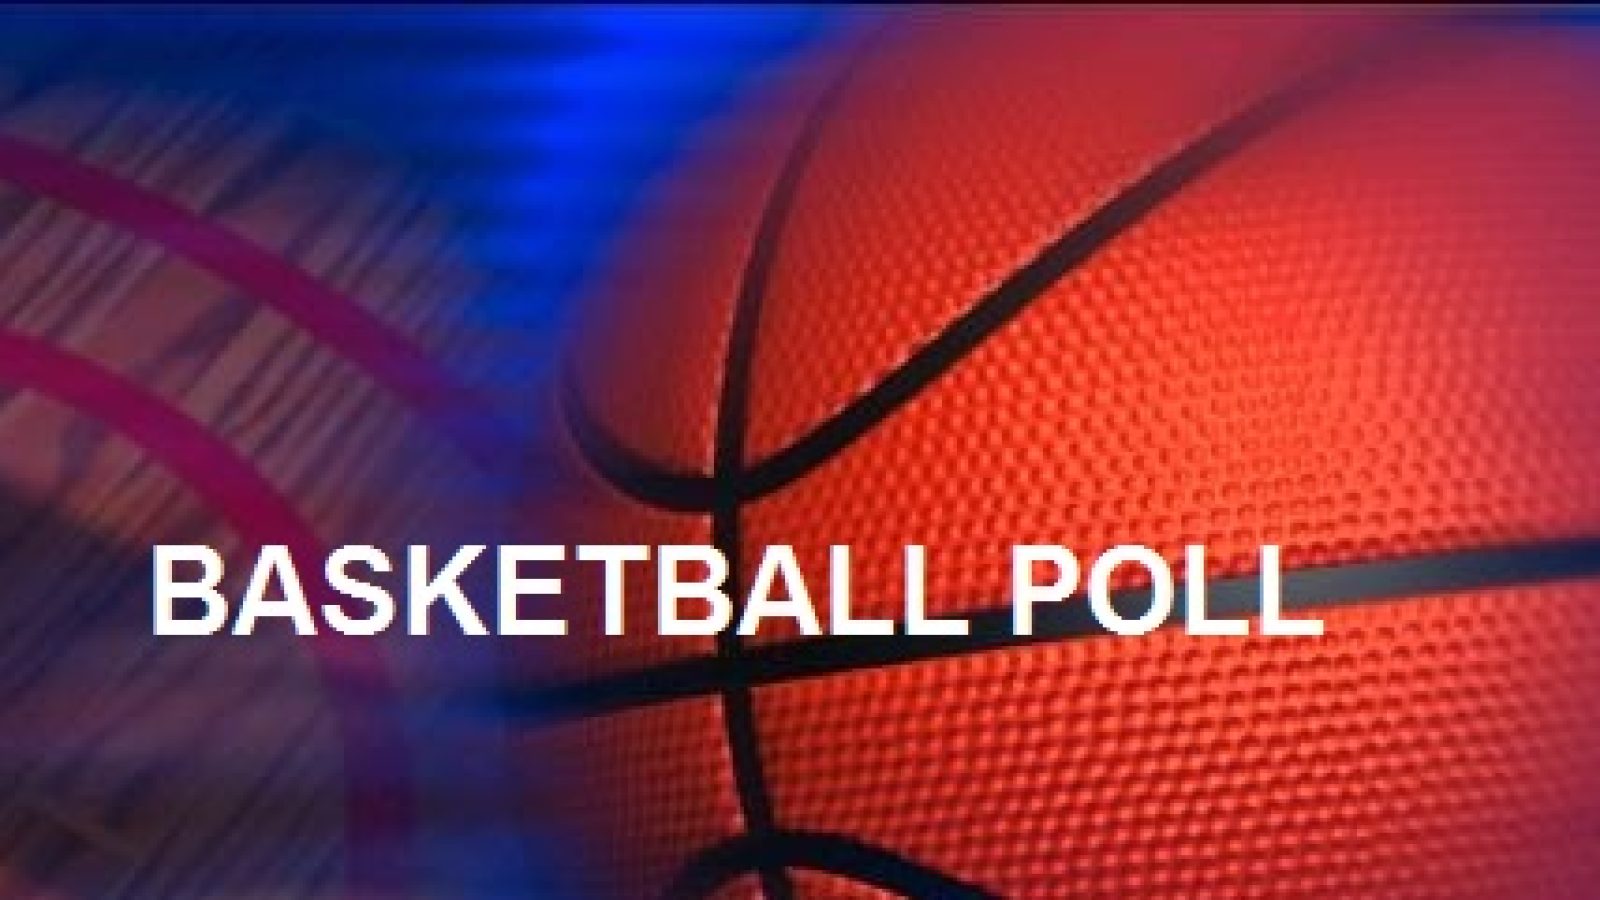 Basketball-Poll-News